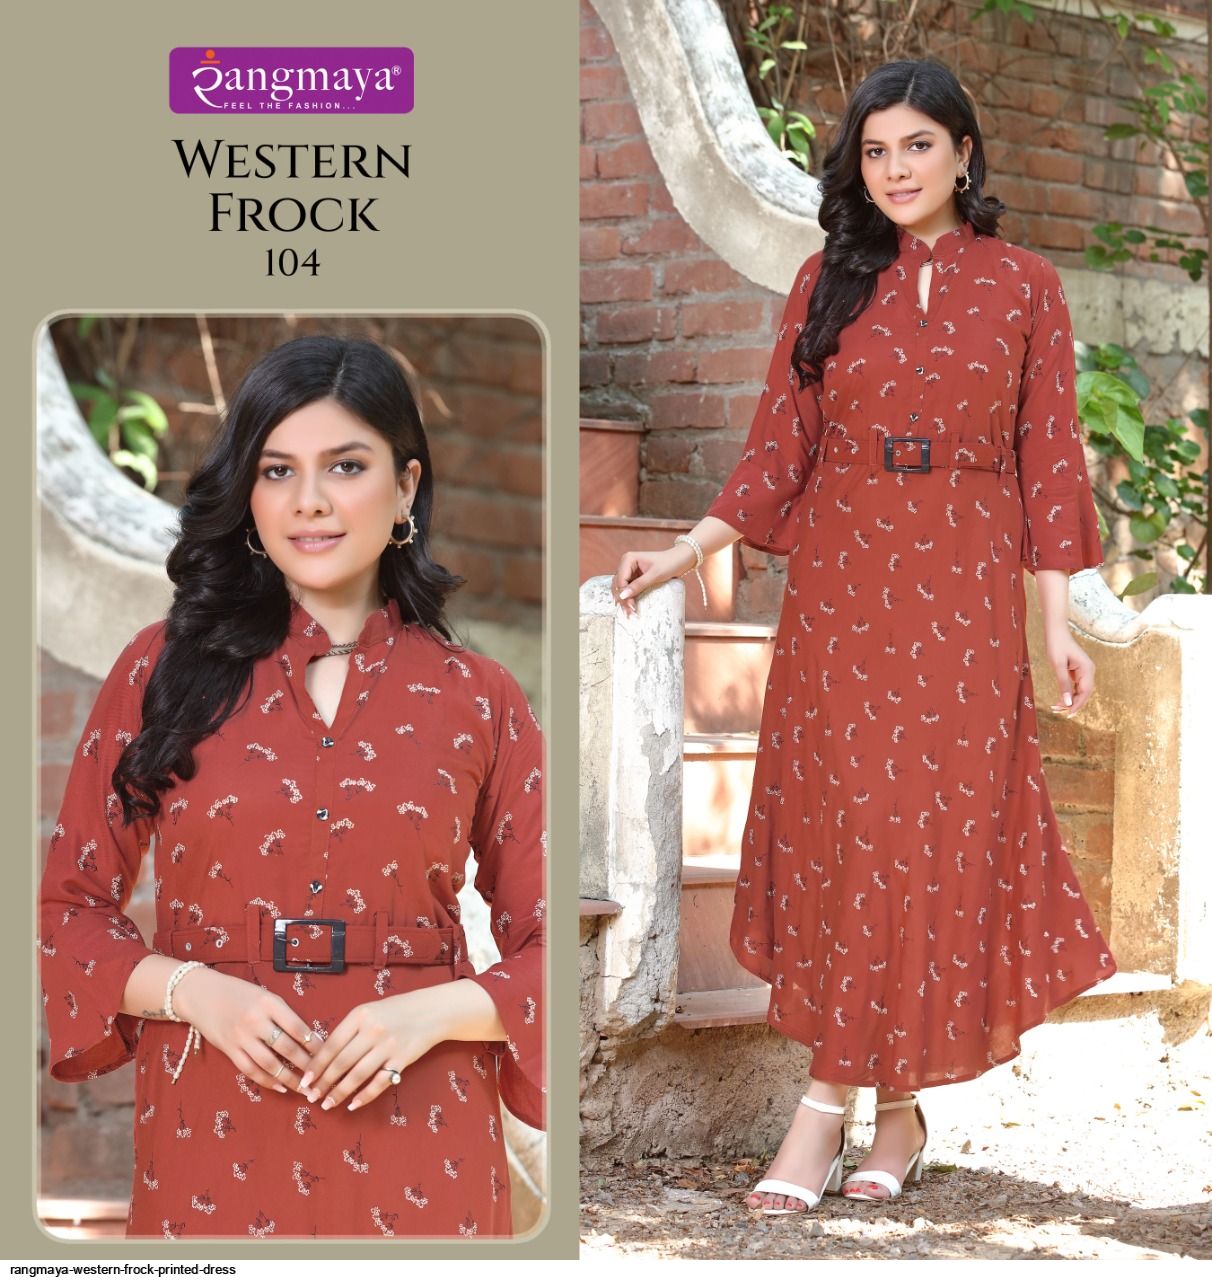 Western Dresses For Women: दिशा पटानी से प्रेरित हॉट ड्रेसेस, जो आपको देंगी  कमाल का लुक | disha patani inspired western dresses for women | HerZindagi